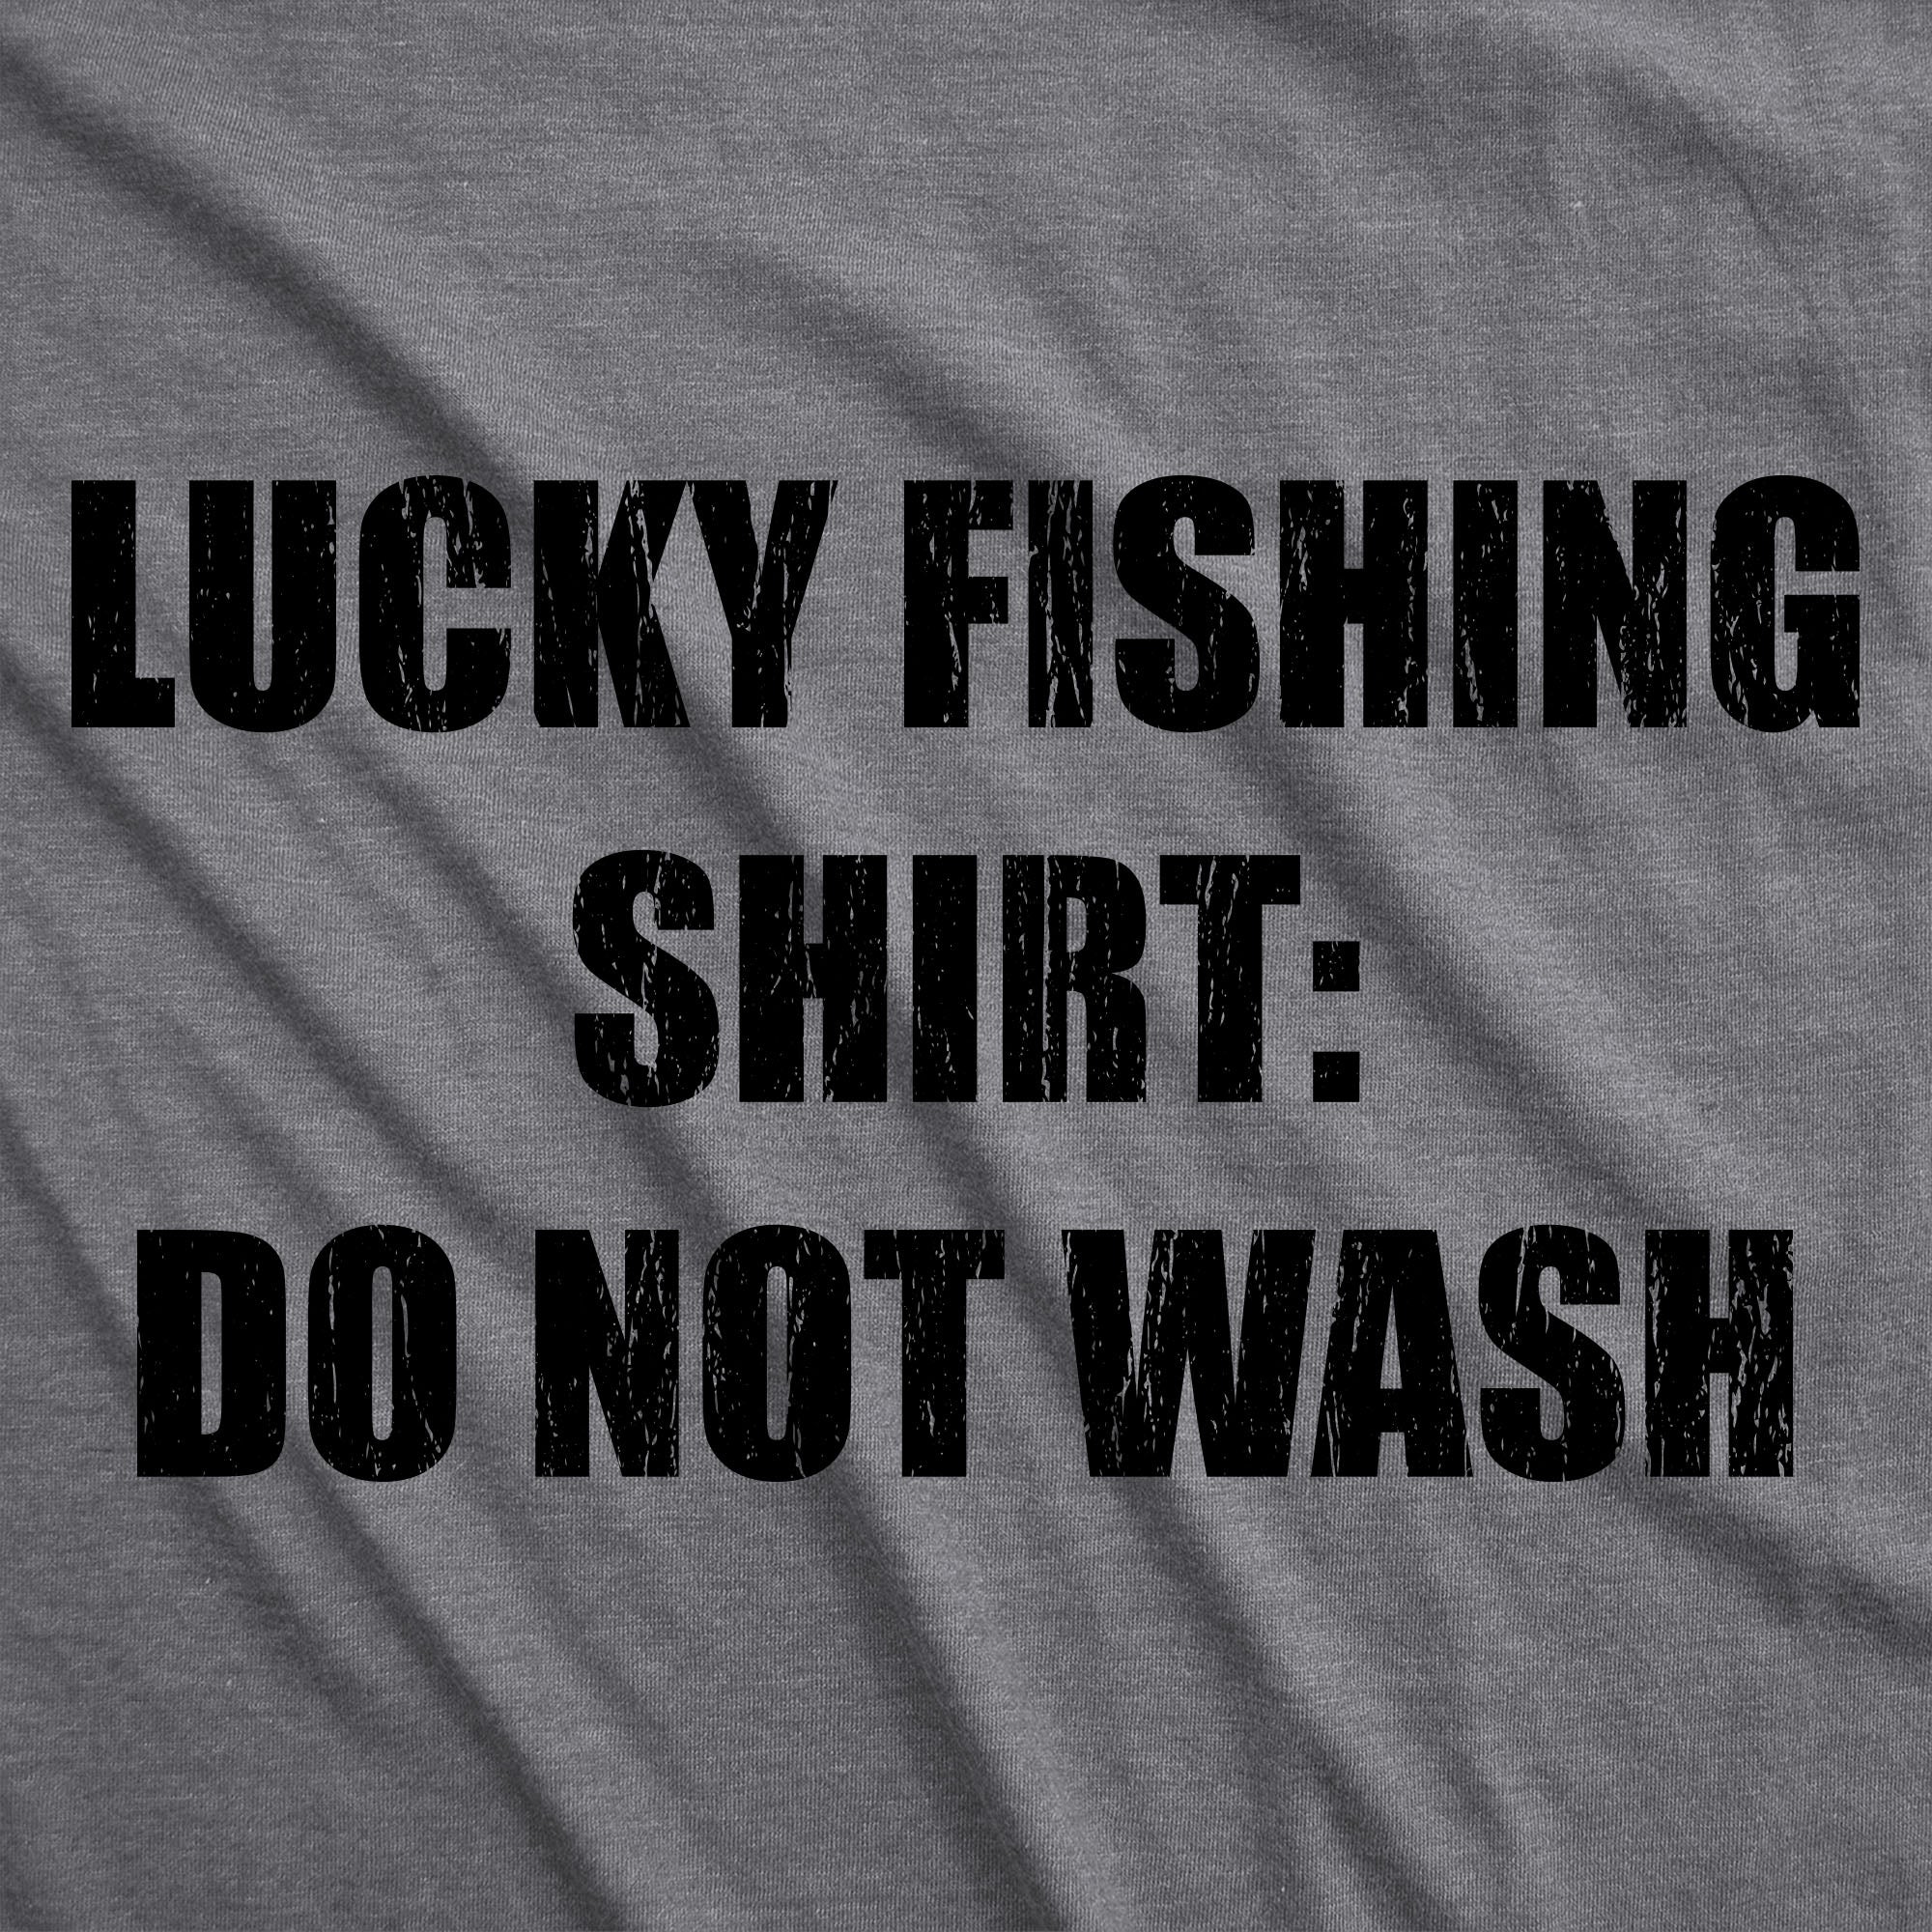 DO NOT WASH MY LUCKY FISHING T-SHIRT